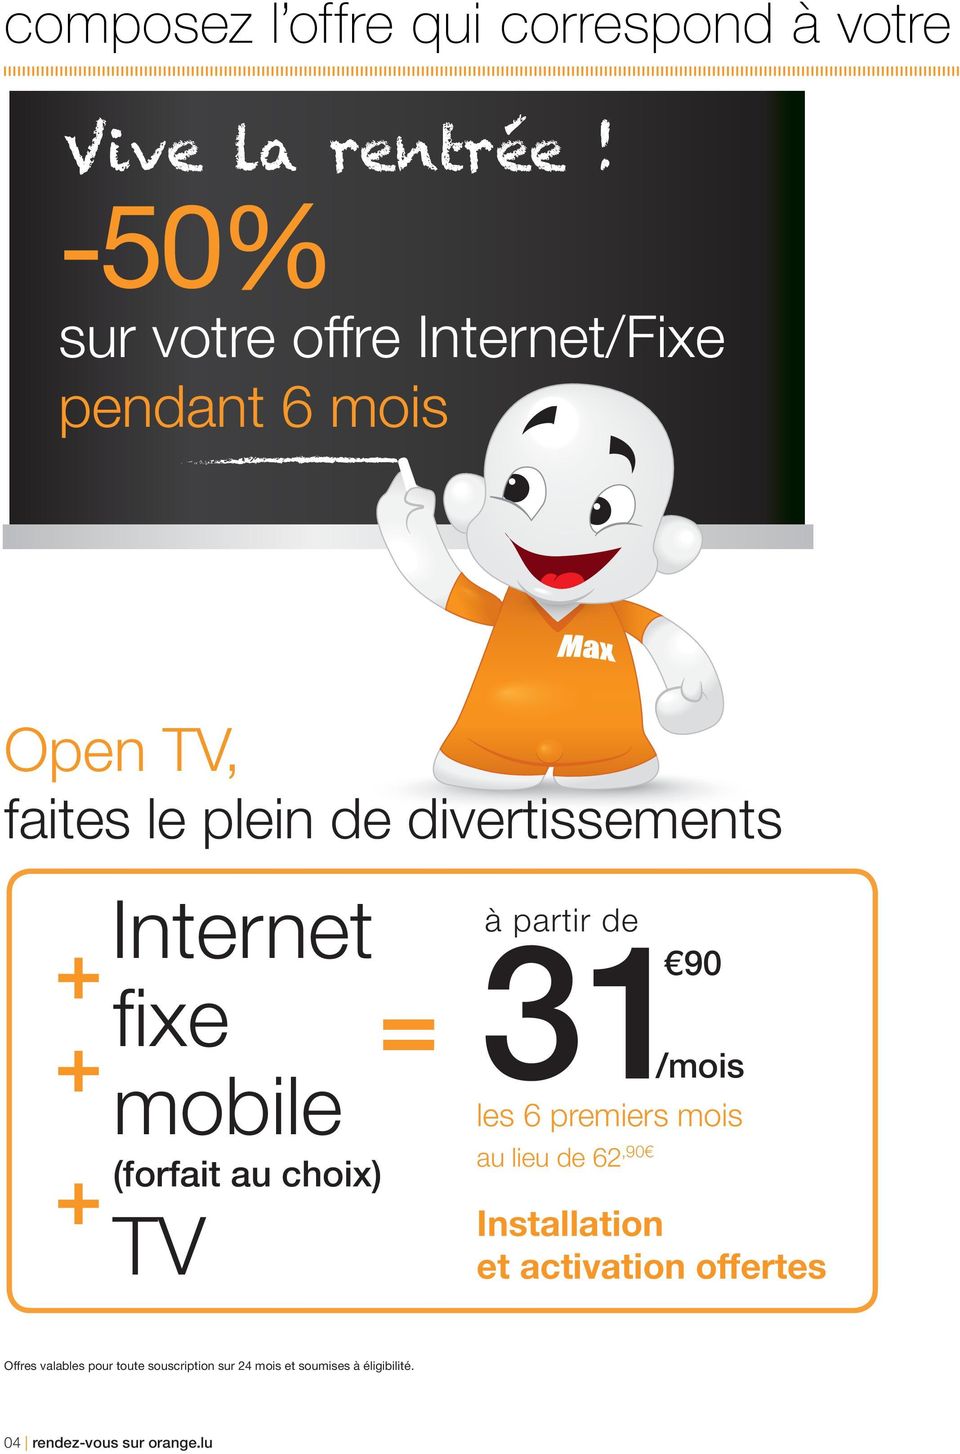 Internet à partir de + fi xe 31 90 + mobile au lieu de 62 + (forfait au choix),90 TV /mois les 6